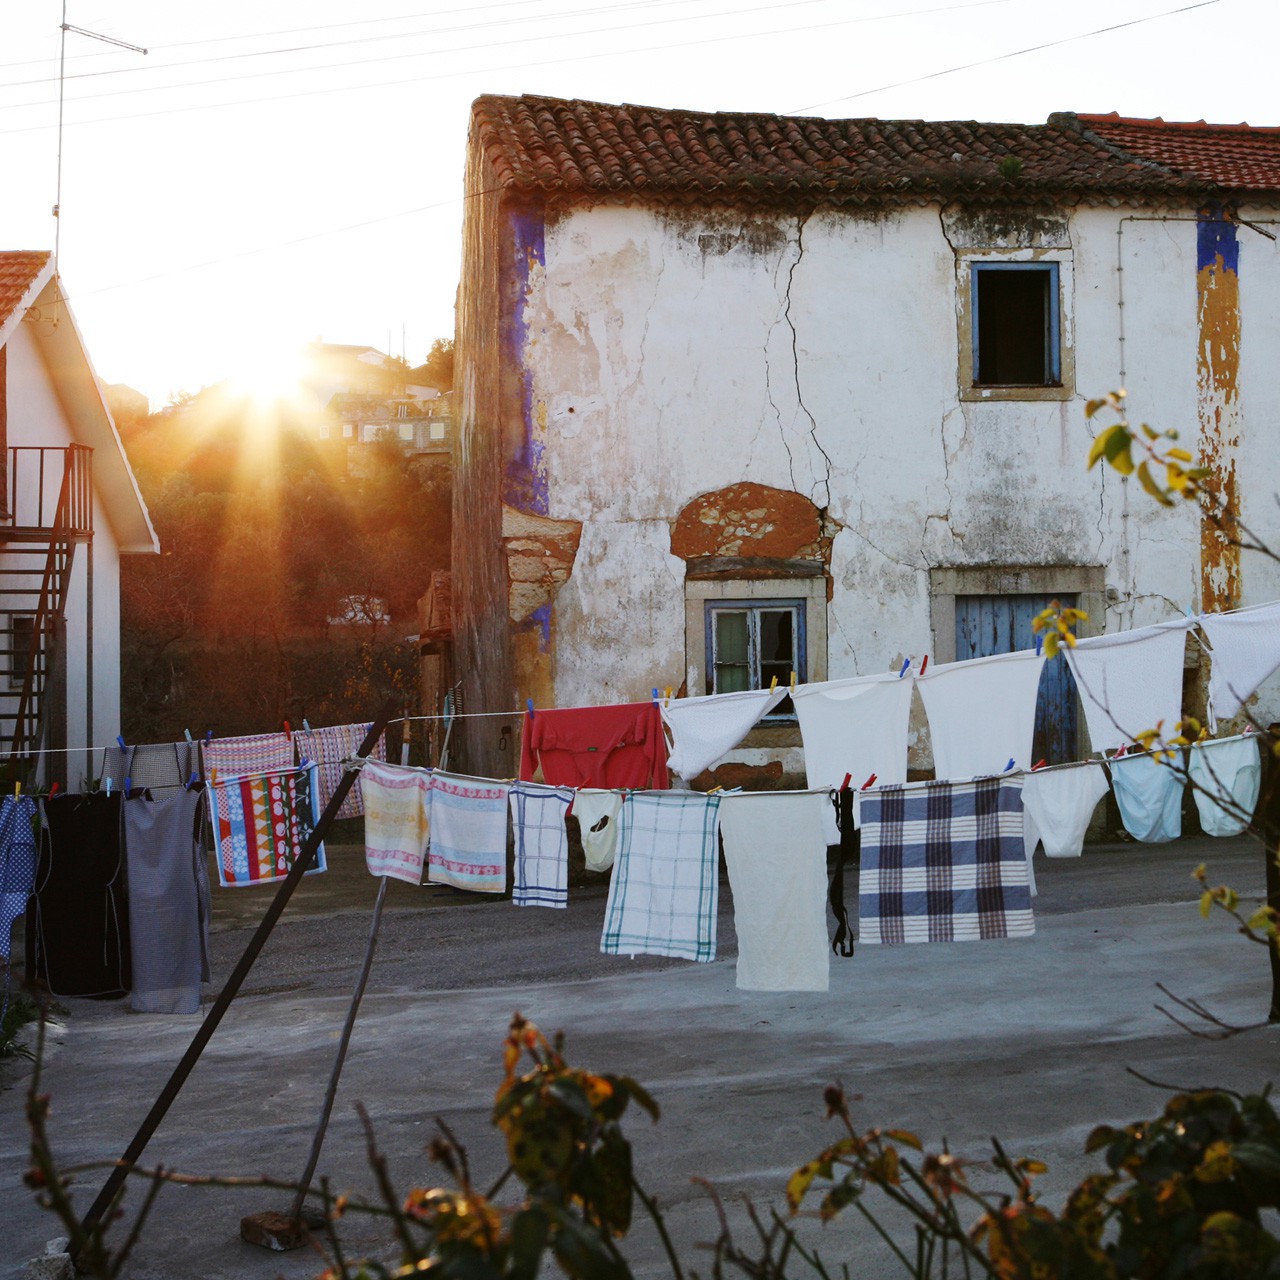 Ein portugiesisches Dorf, Sonnenuntergang und Wäscheleine